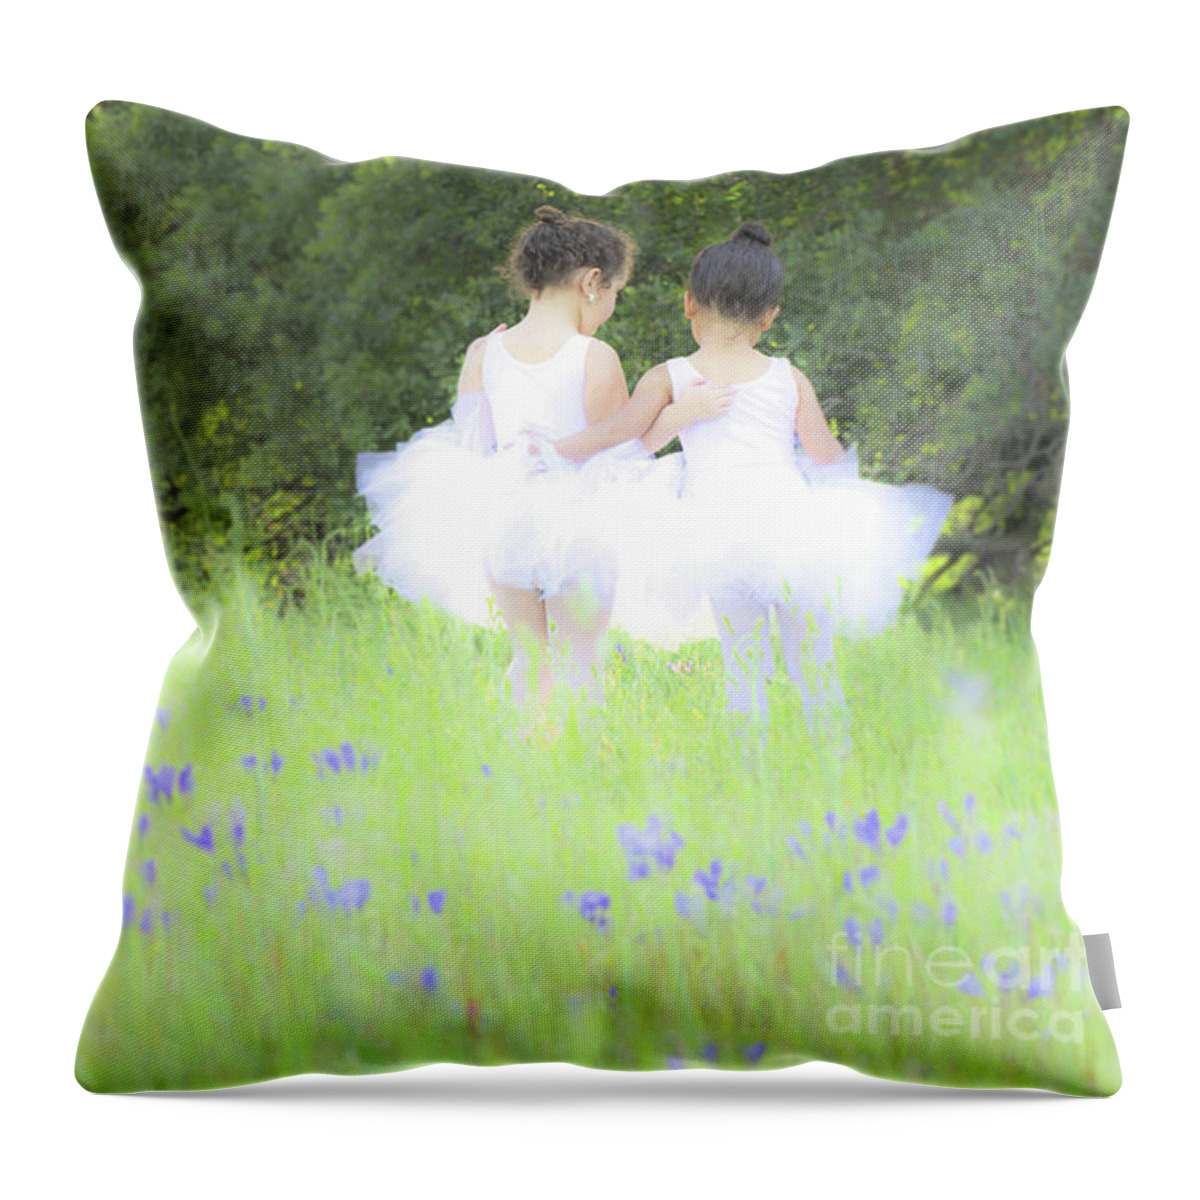 Ballet Throw Pillow featuring the photograph Ballerina Girls by Leslie Wells